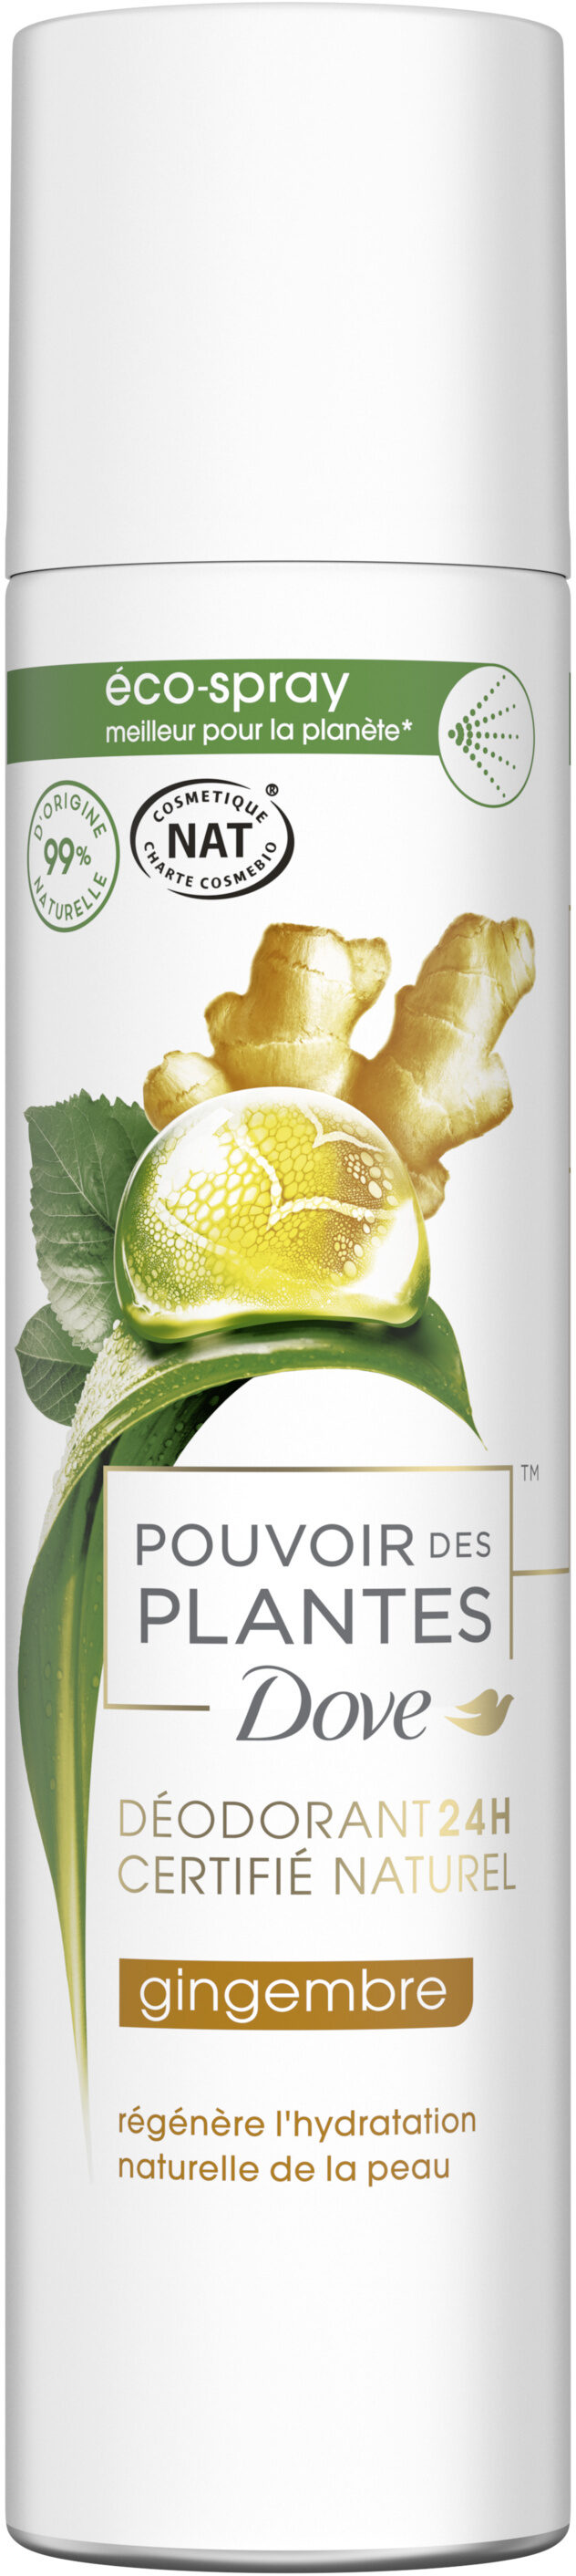 DOVE Déodorant Femme Spray Pouvoir des Plantes Gingembre 75ml - Produit - fr